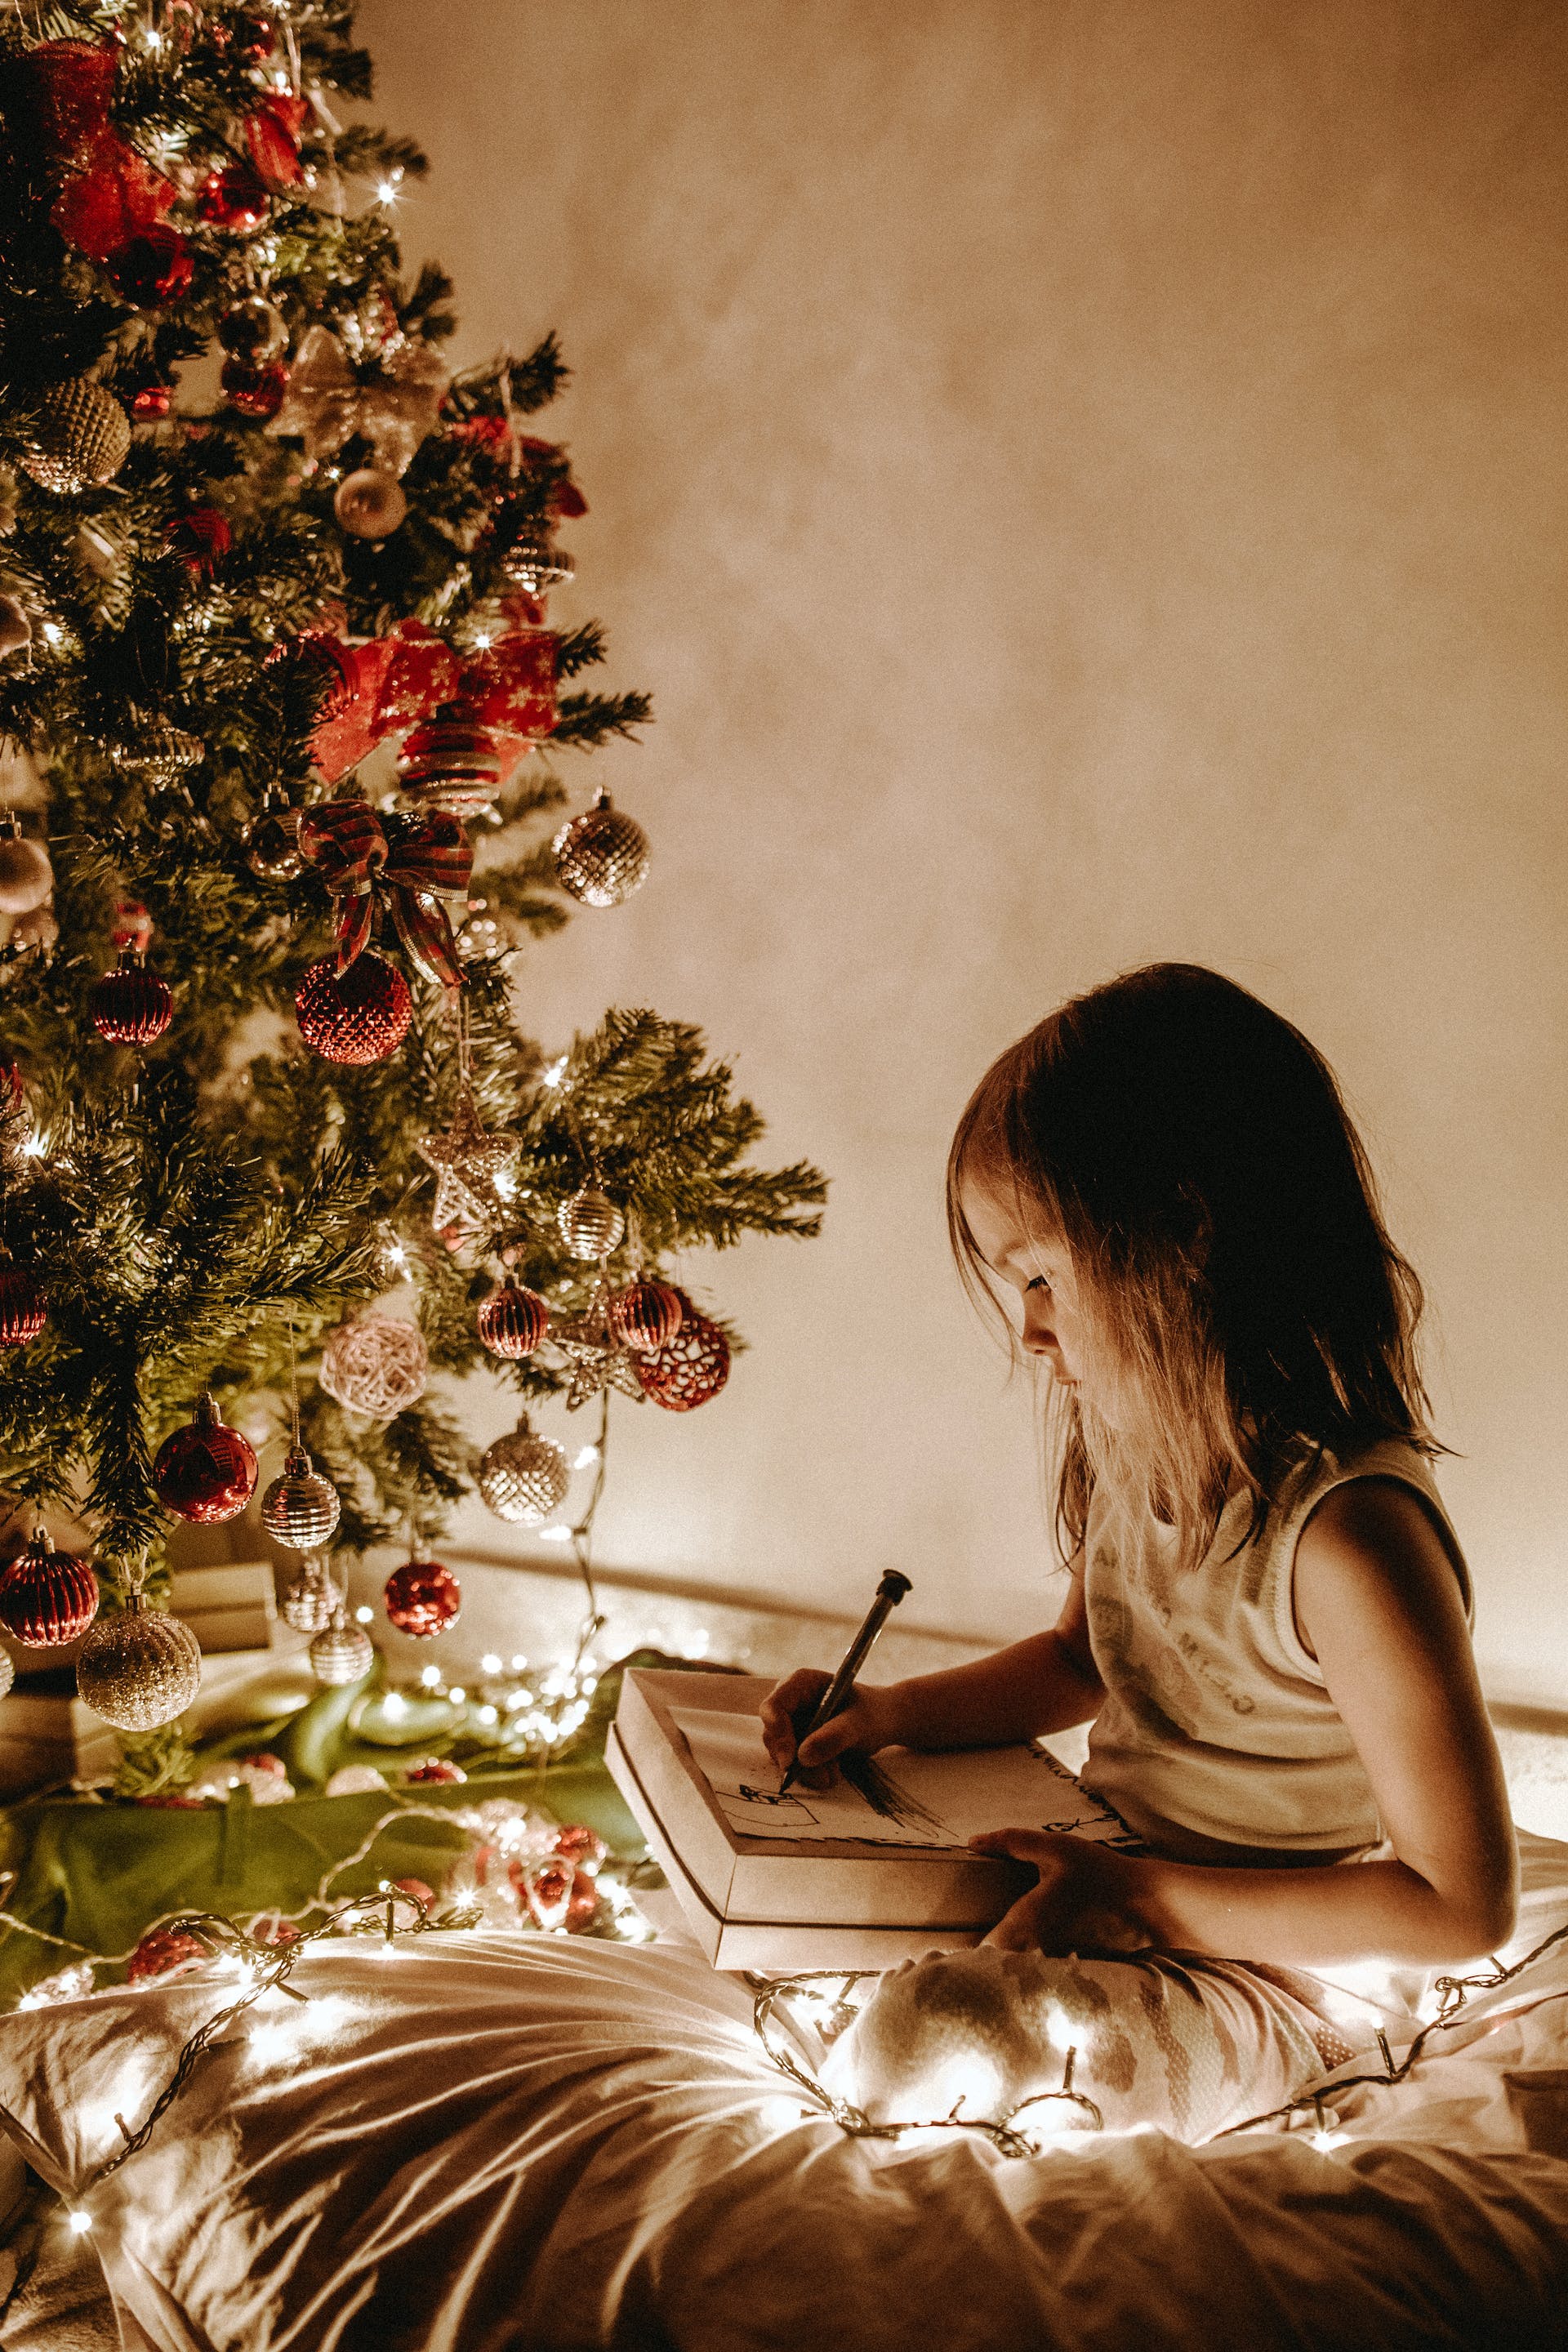 Une petite fille assise près d'un sapin de Noël | Source : Pexels